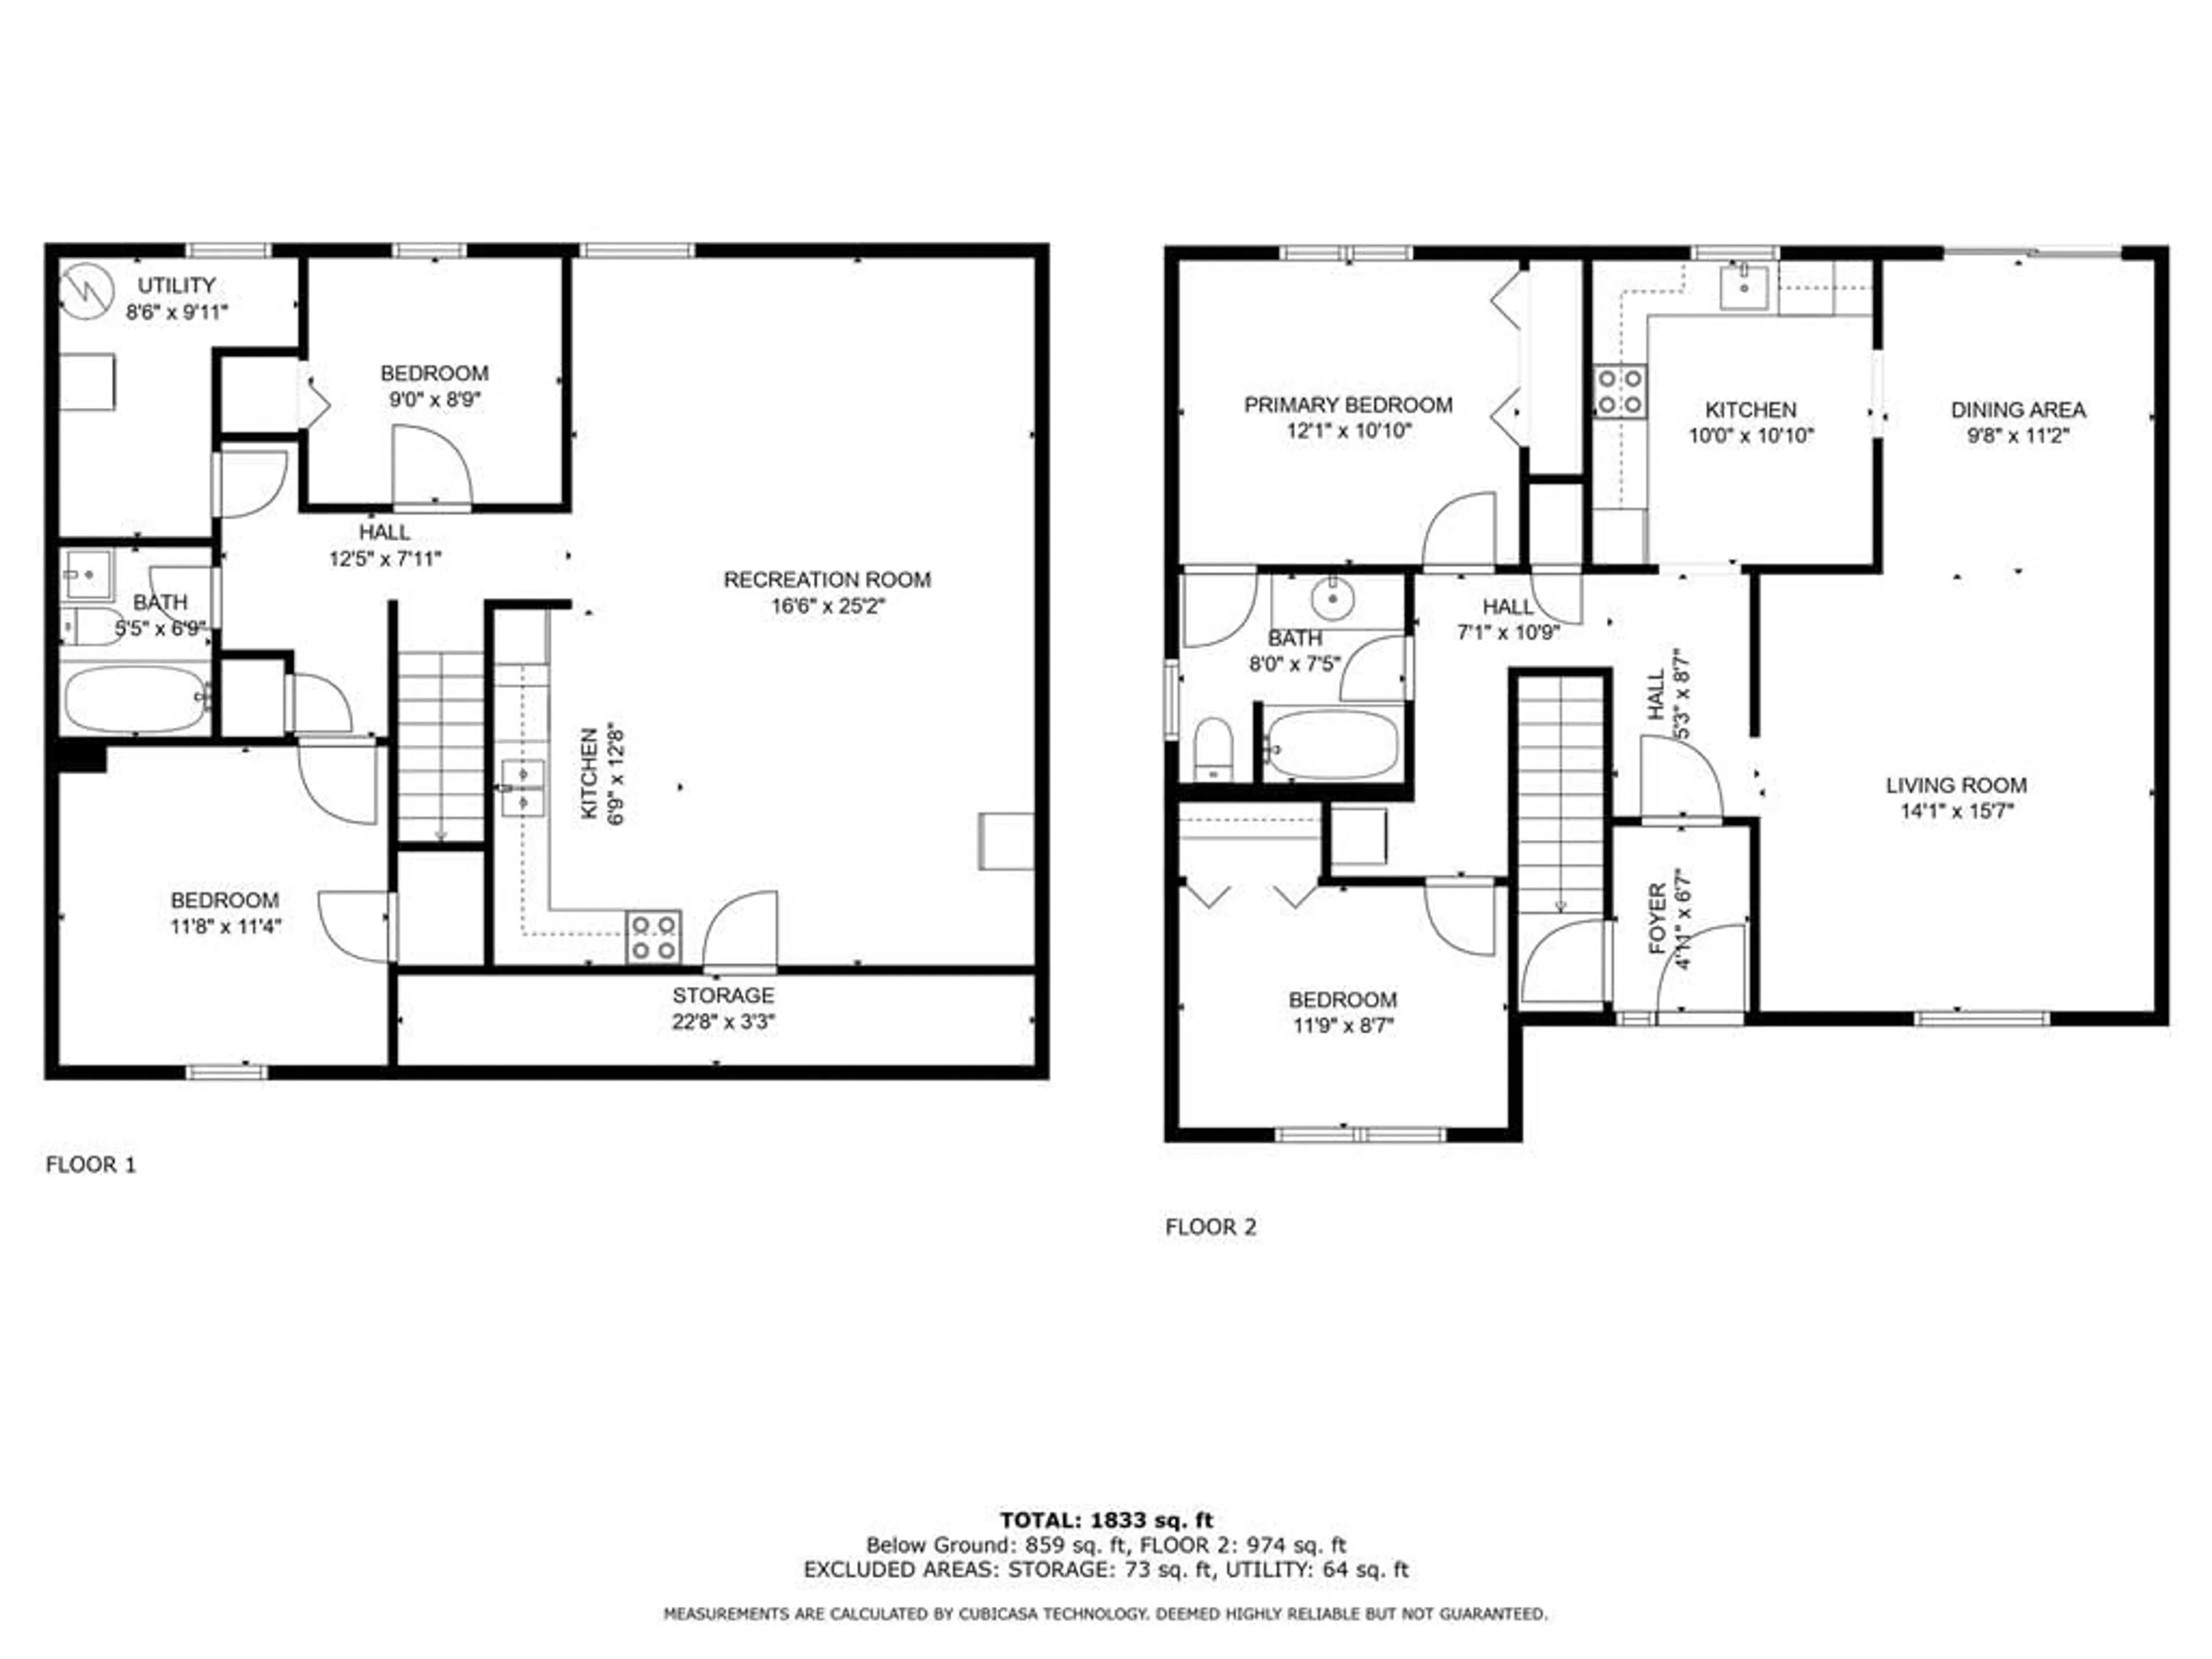 Floor plan for 39 Dancy Dr, Orillia Ontario L3V 7M2